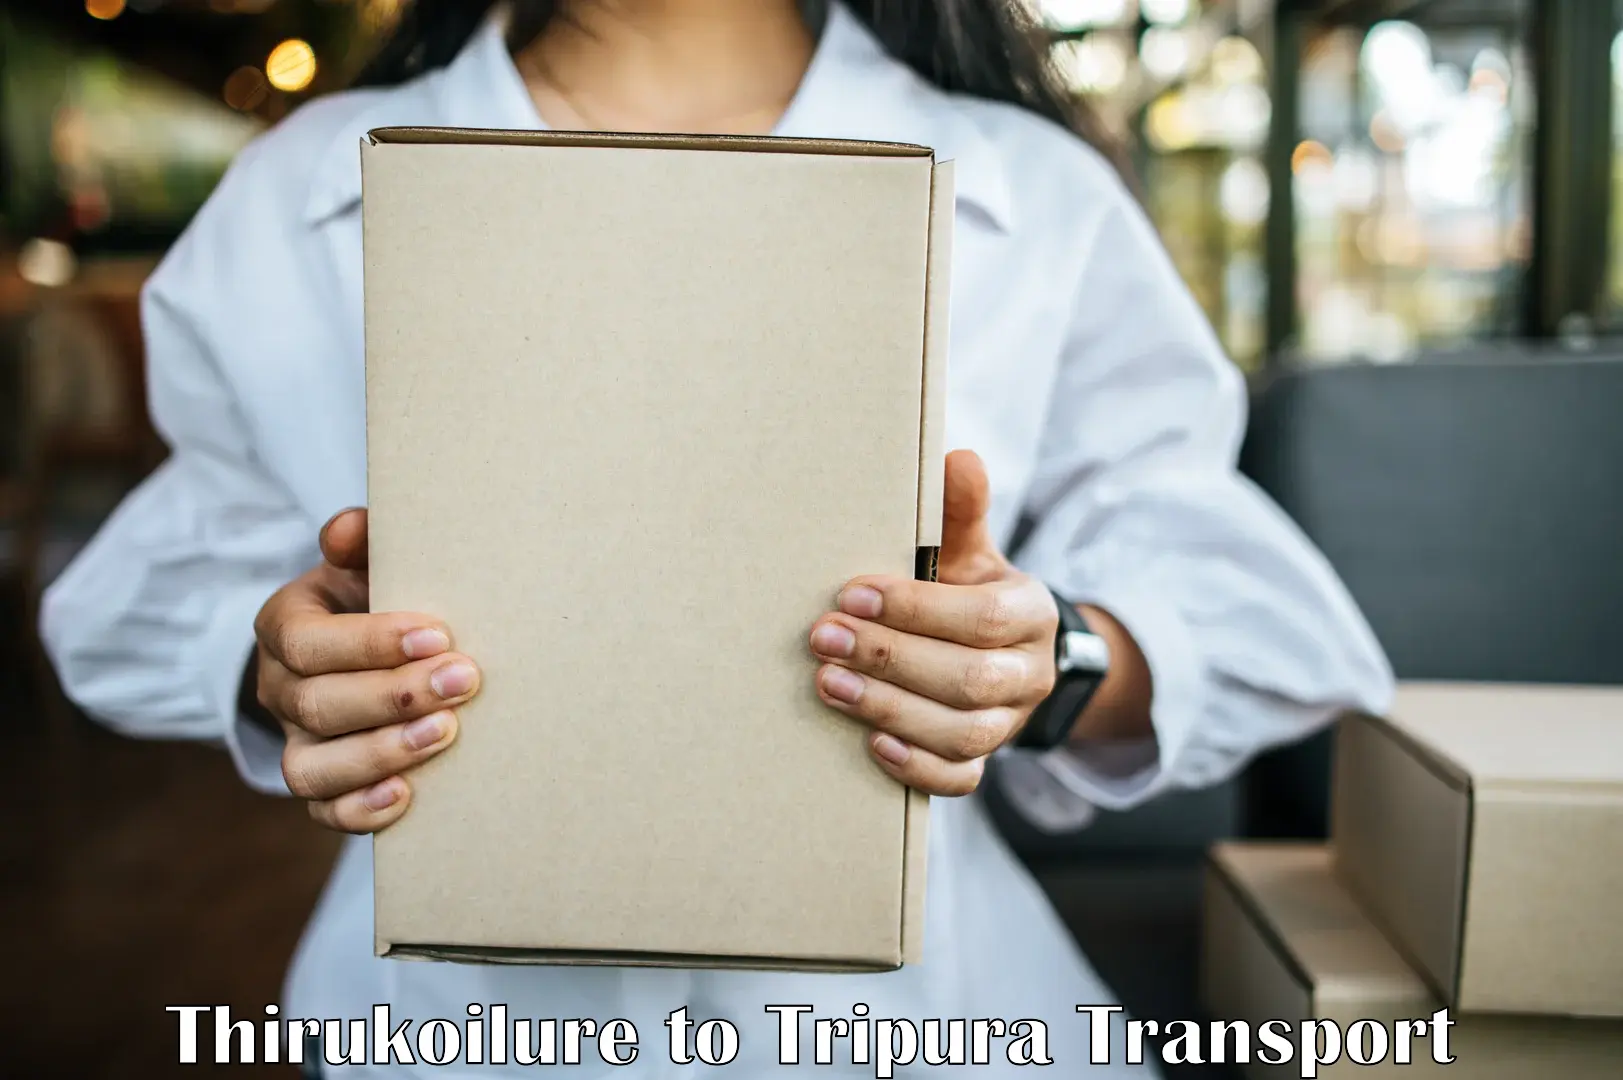 Online transport booking Thirukoilure to Santirbazar